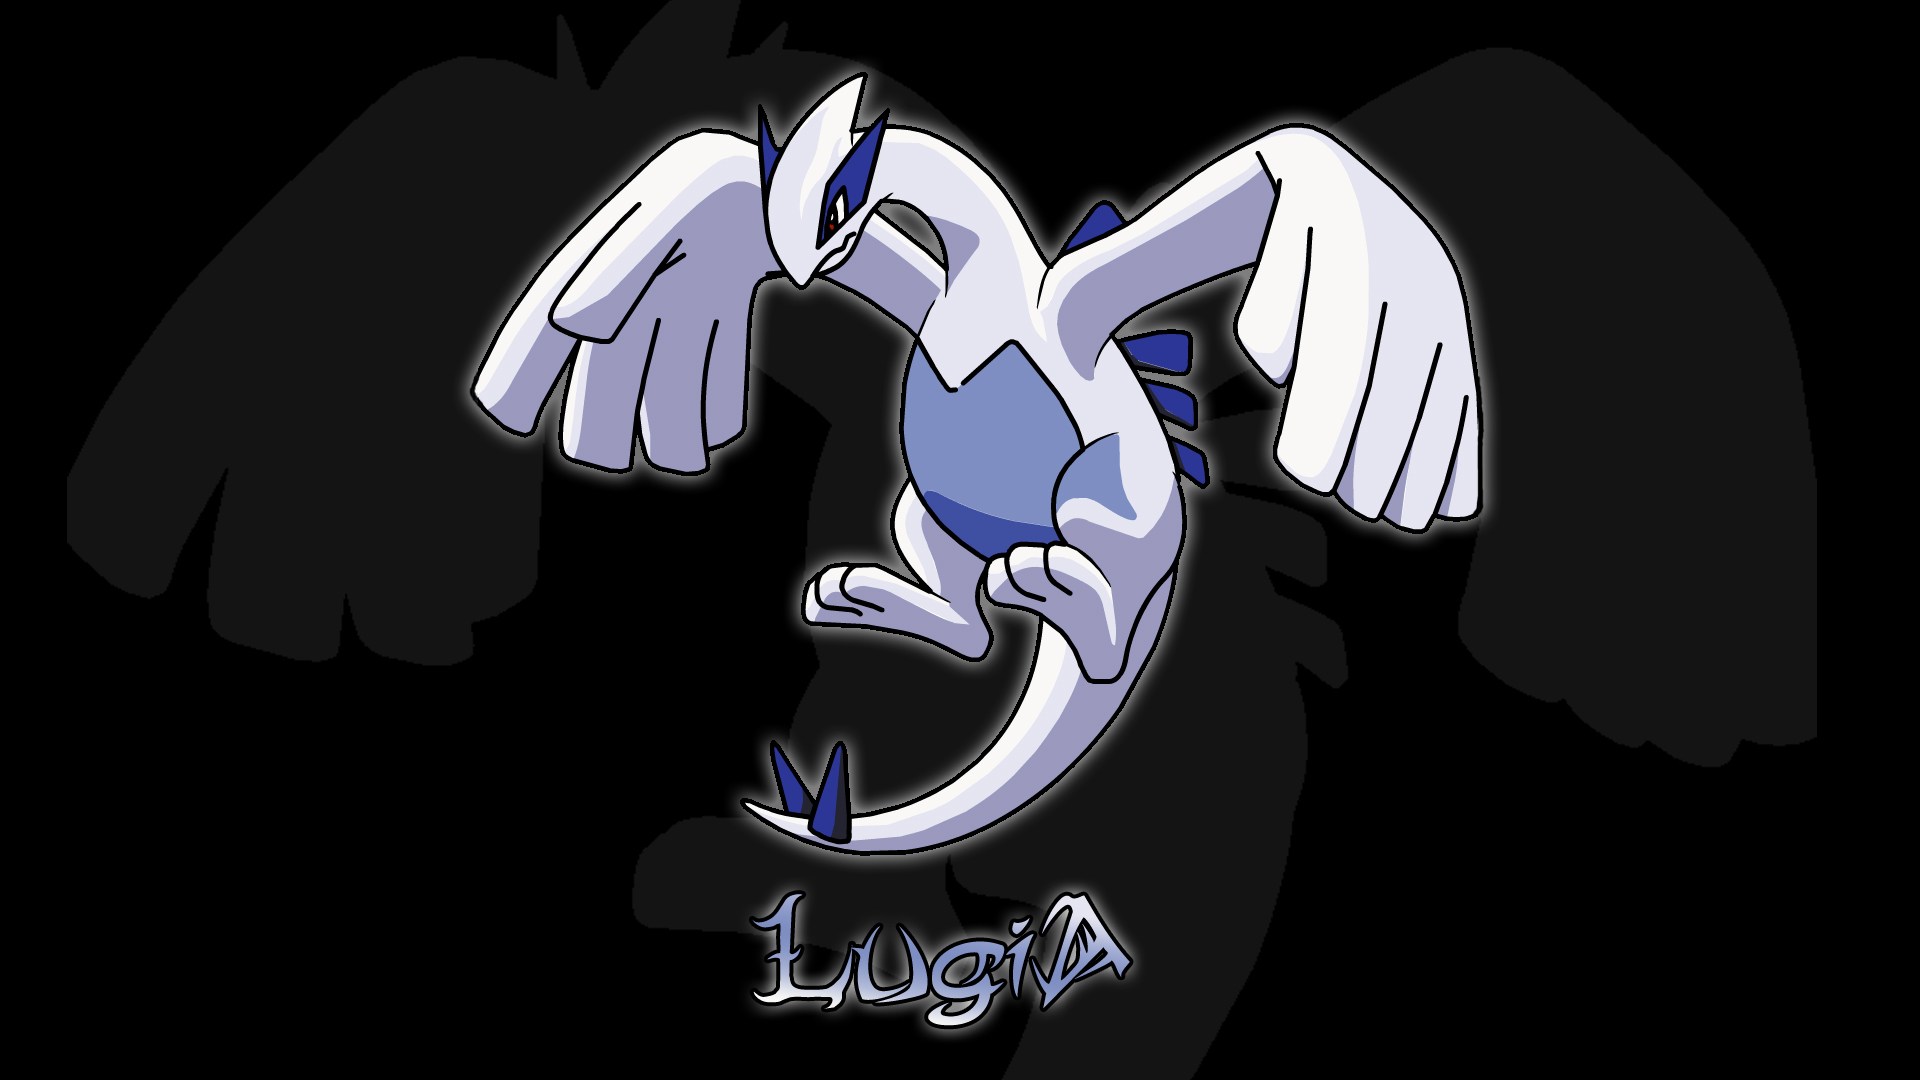 Lugia: Lugia, một trong những loài pokemon mạnh mẽ và huyền thoại nhất. Xem ngay hình ảnh liên quan đến Lugia để khám phá những điều thú vị về loài pokemon này và đồng thời thưởng thức những hình ảnh đẹp mắt.